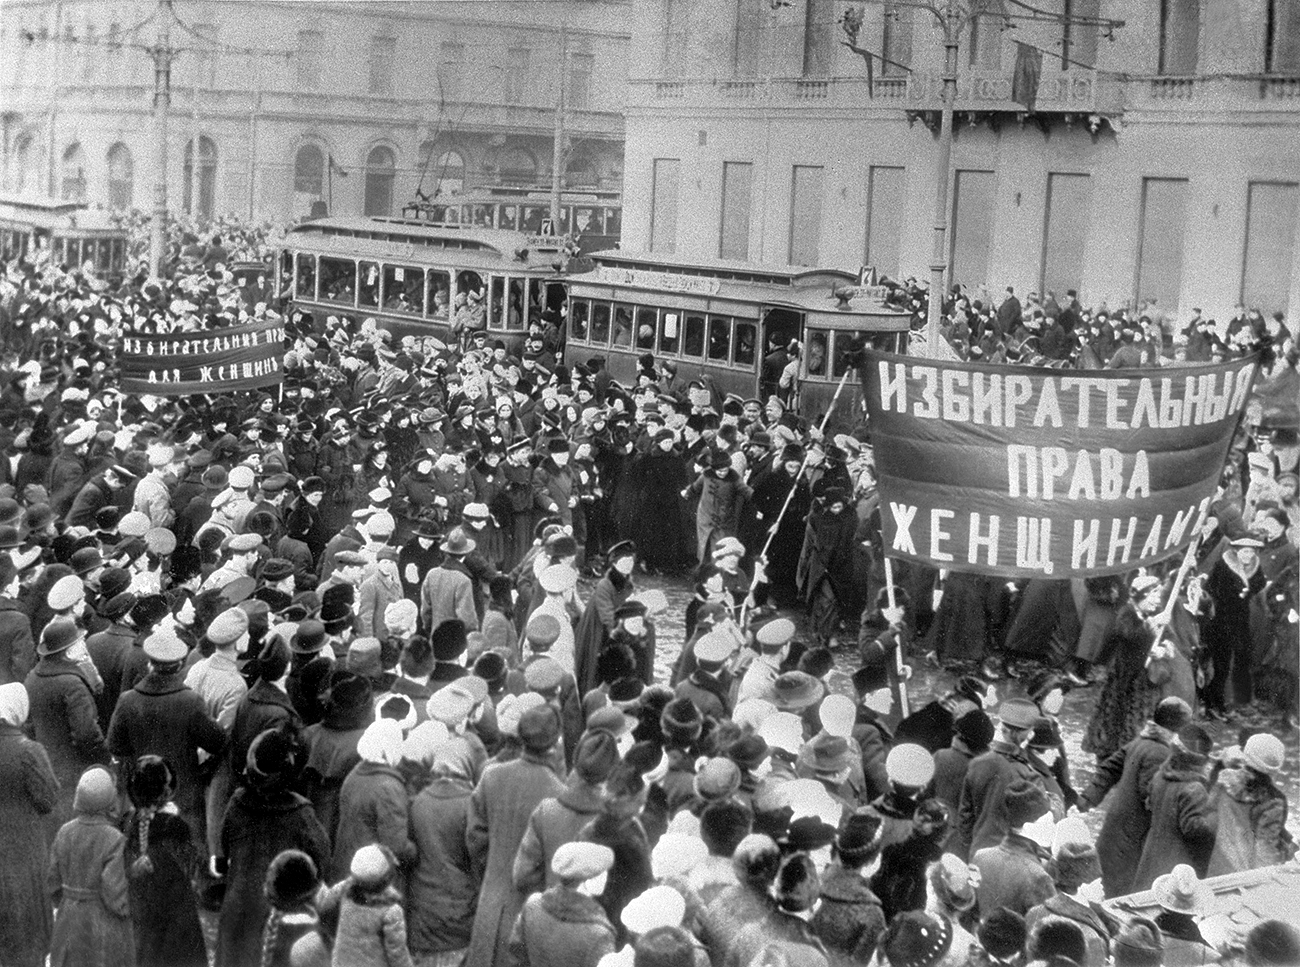 Frauen demonstrieren für ihr Stimmrecht – eine von vielen Protestaktionen während der Februarrevolution 1917 in Petrograd.